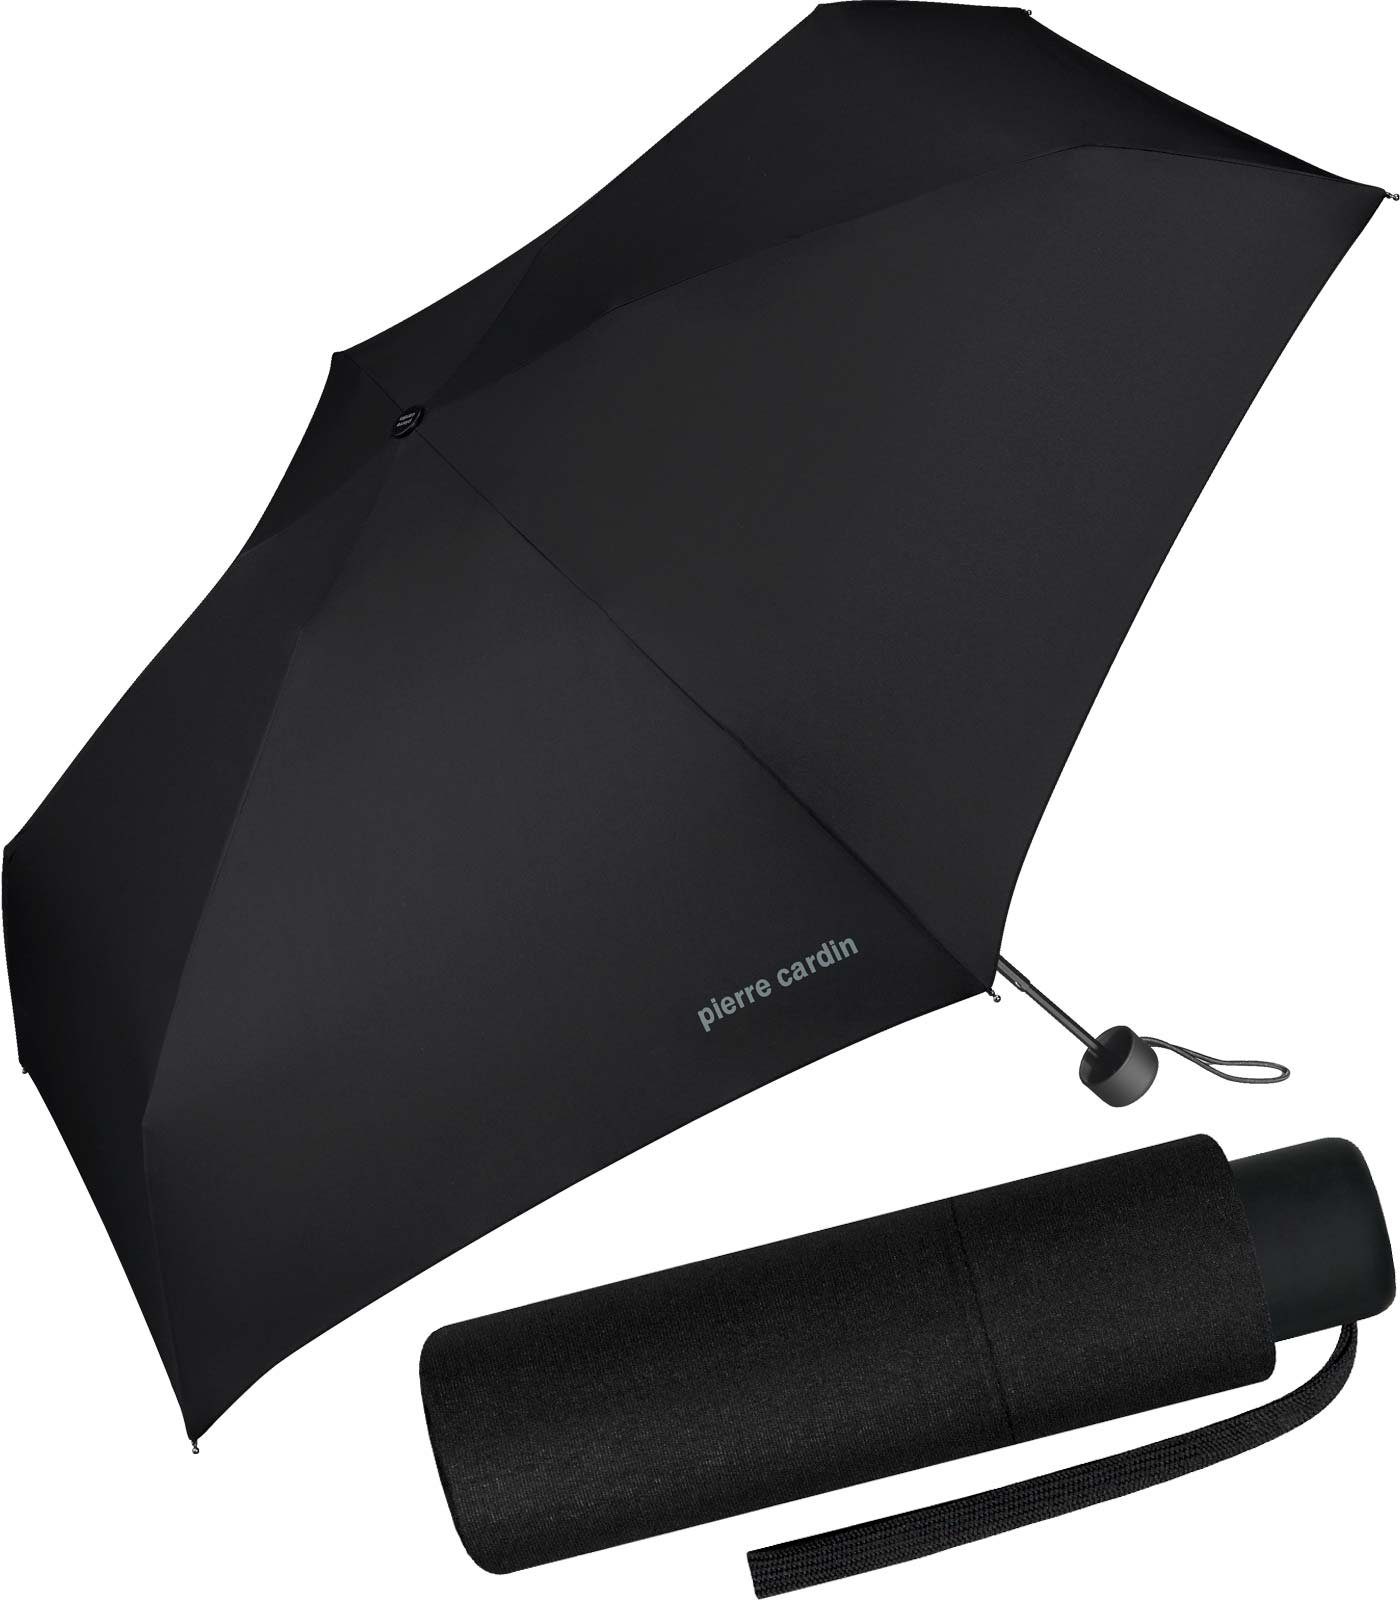 Pierre Cardin Taschenregenschirm leichter supermini Regenschirm Petito Slimline, passt in jede Tasche